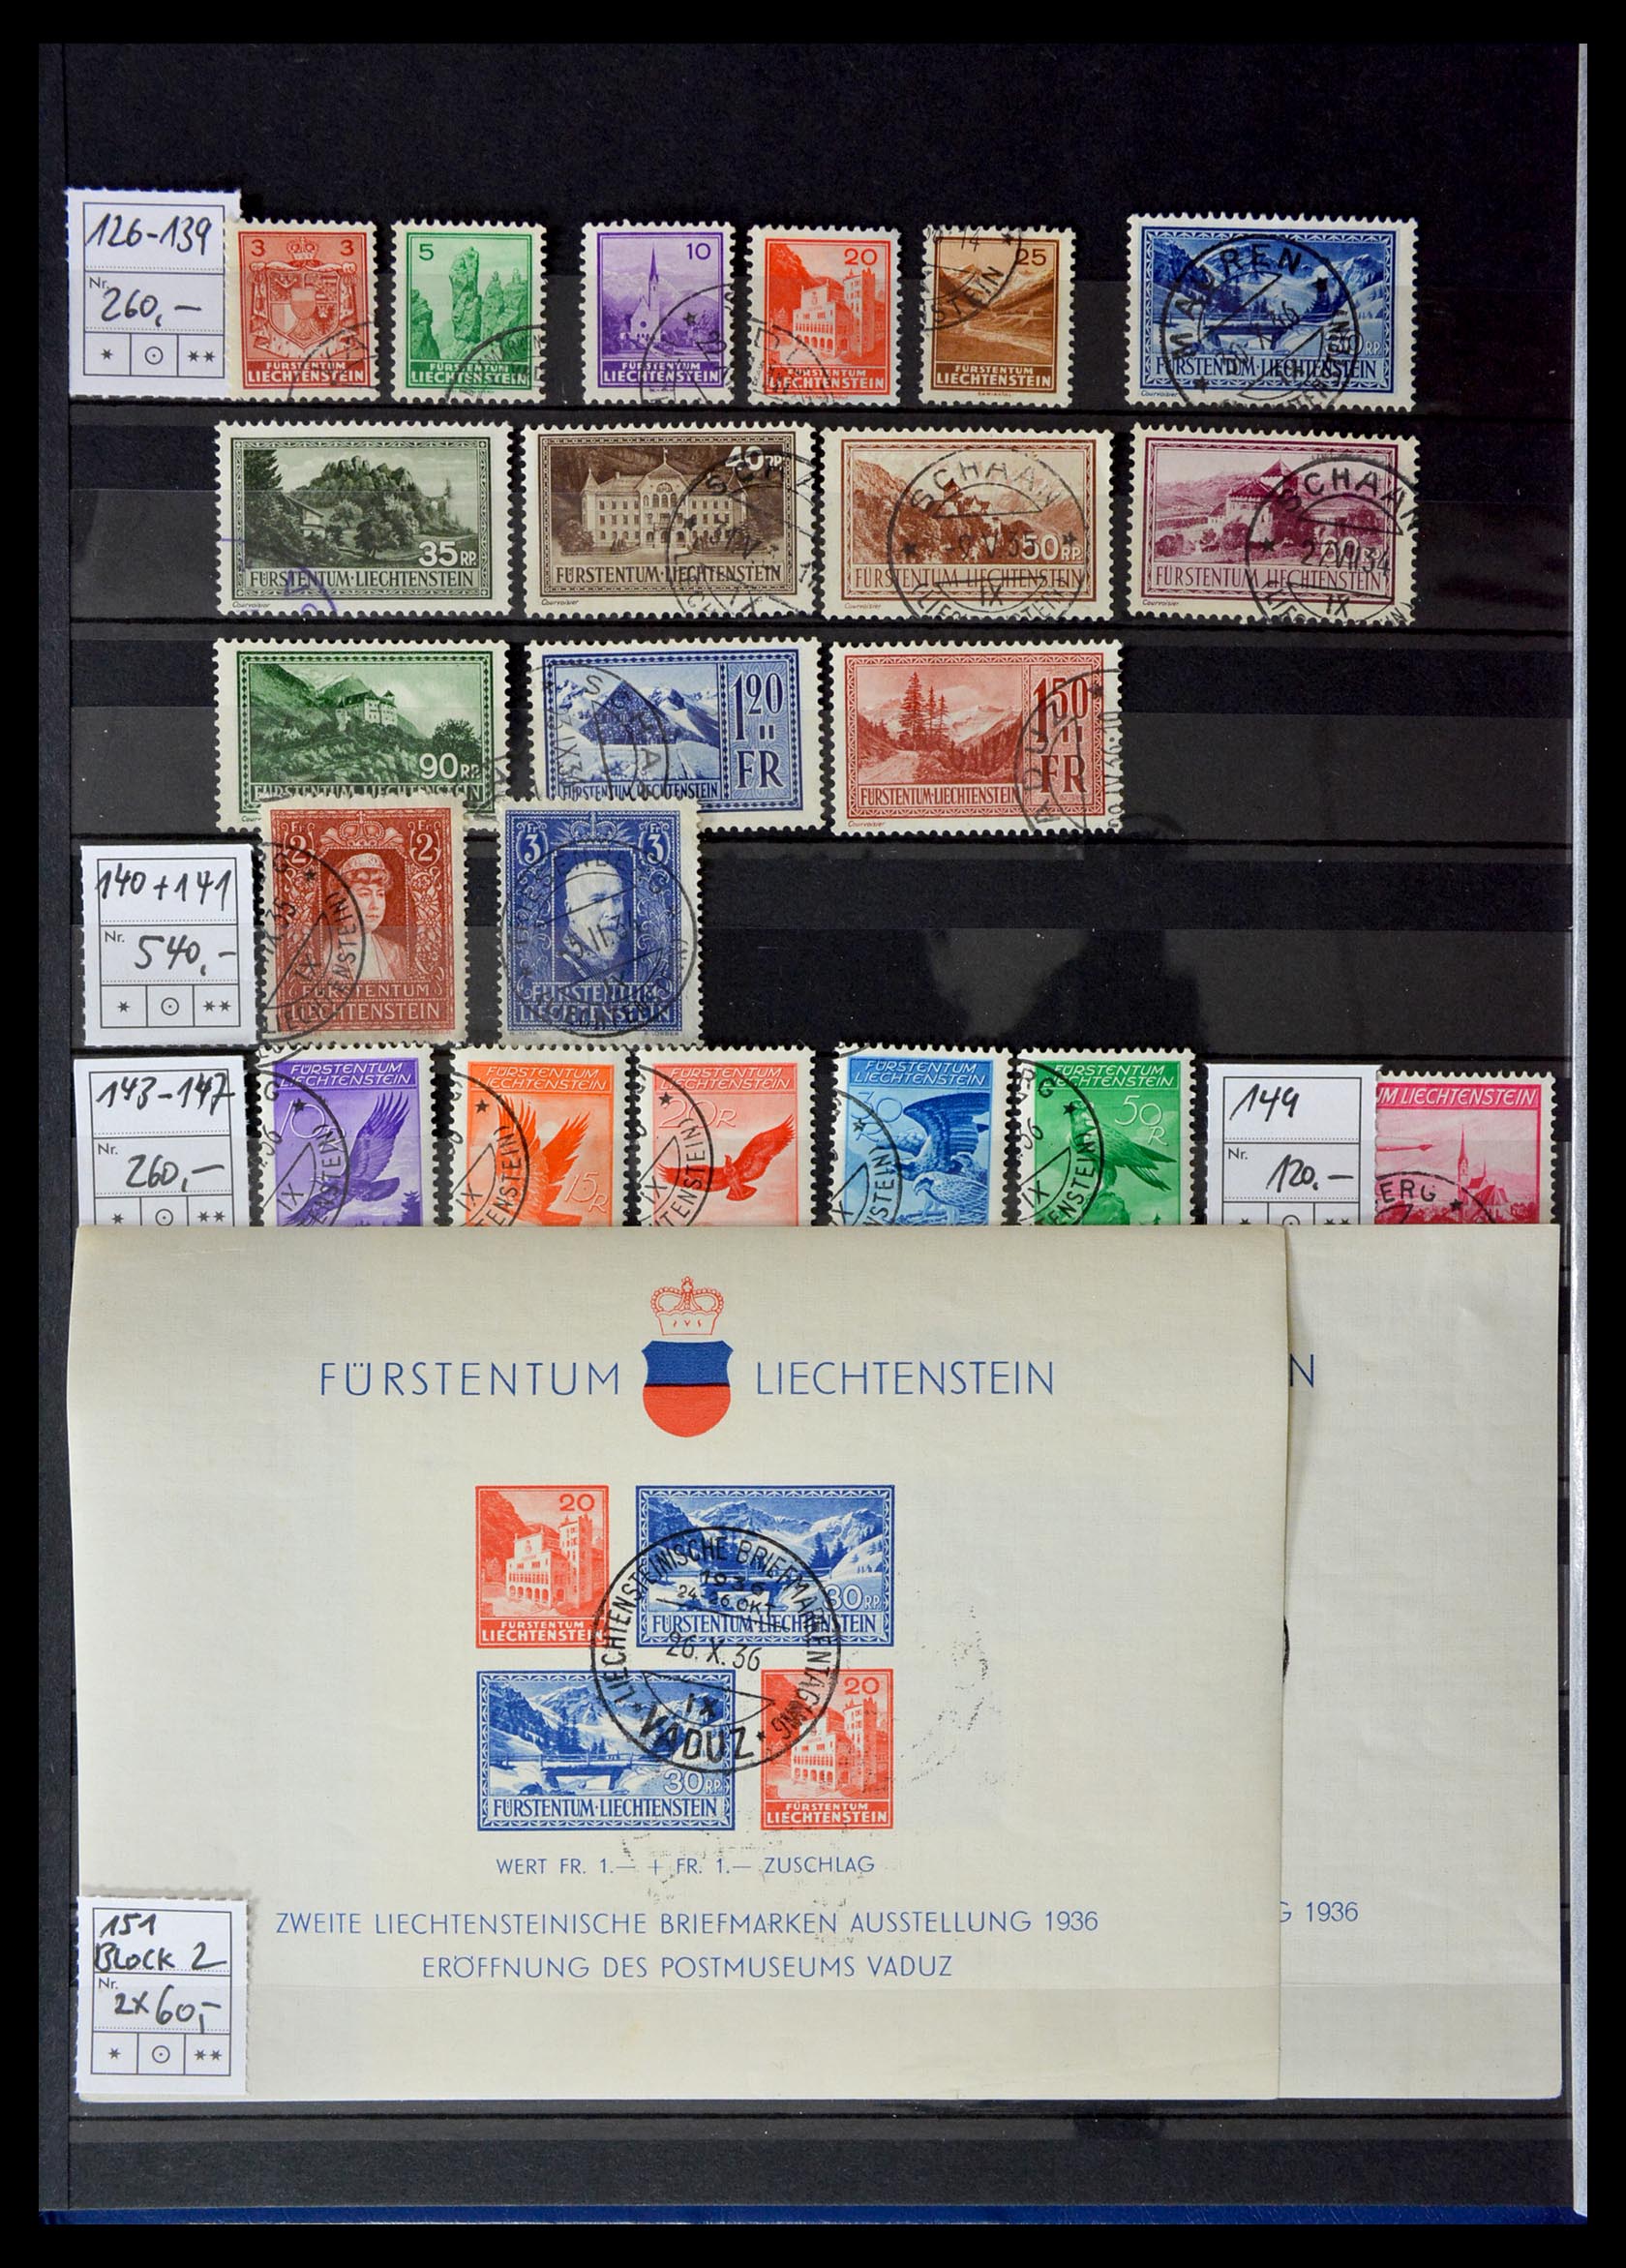 29161 006 - 29161 Liechtenstein 1912-2012.